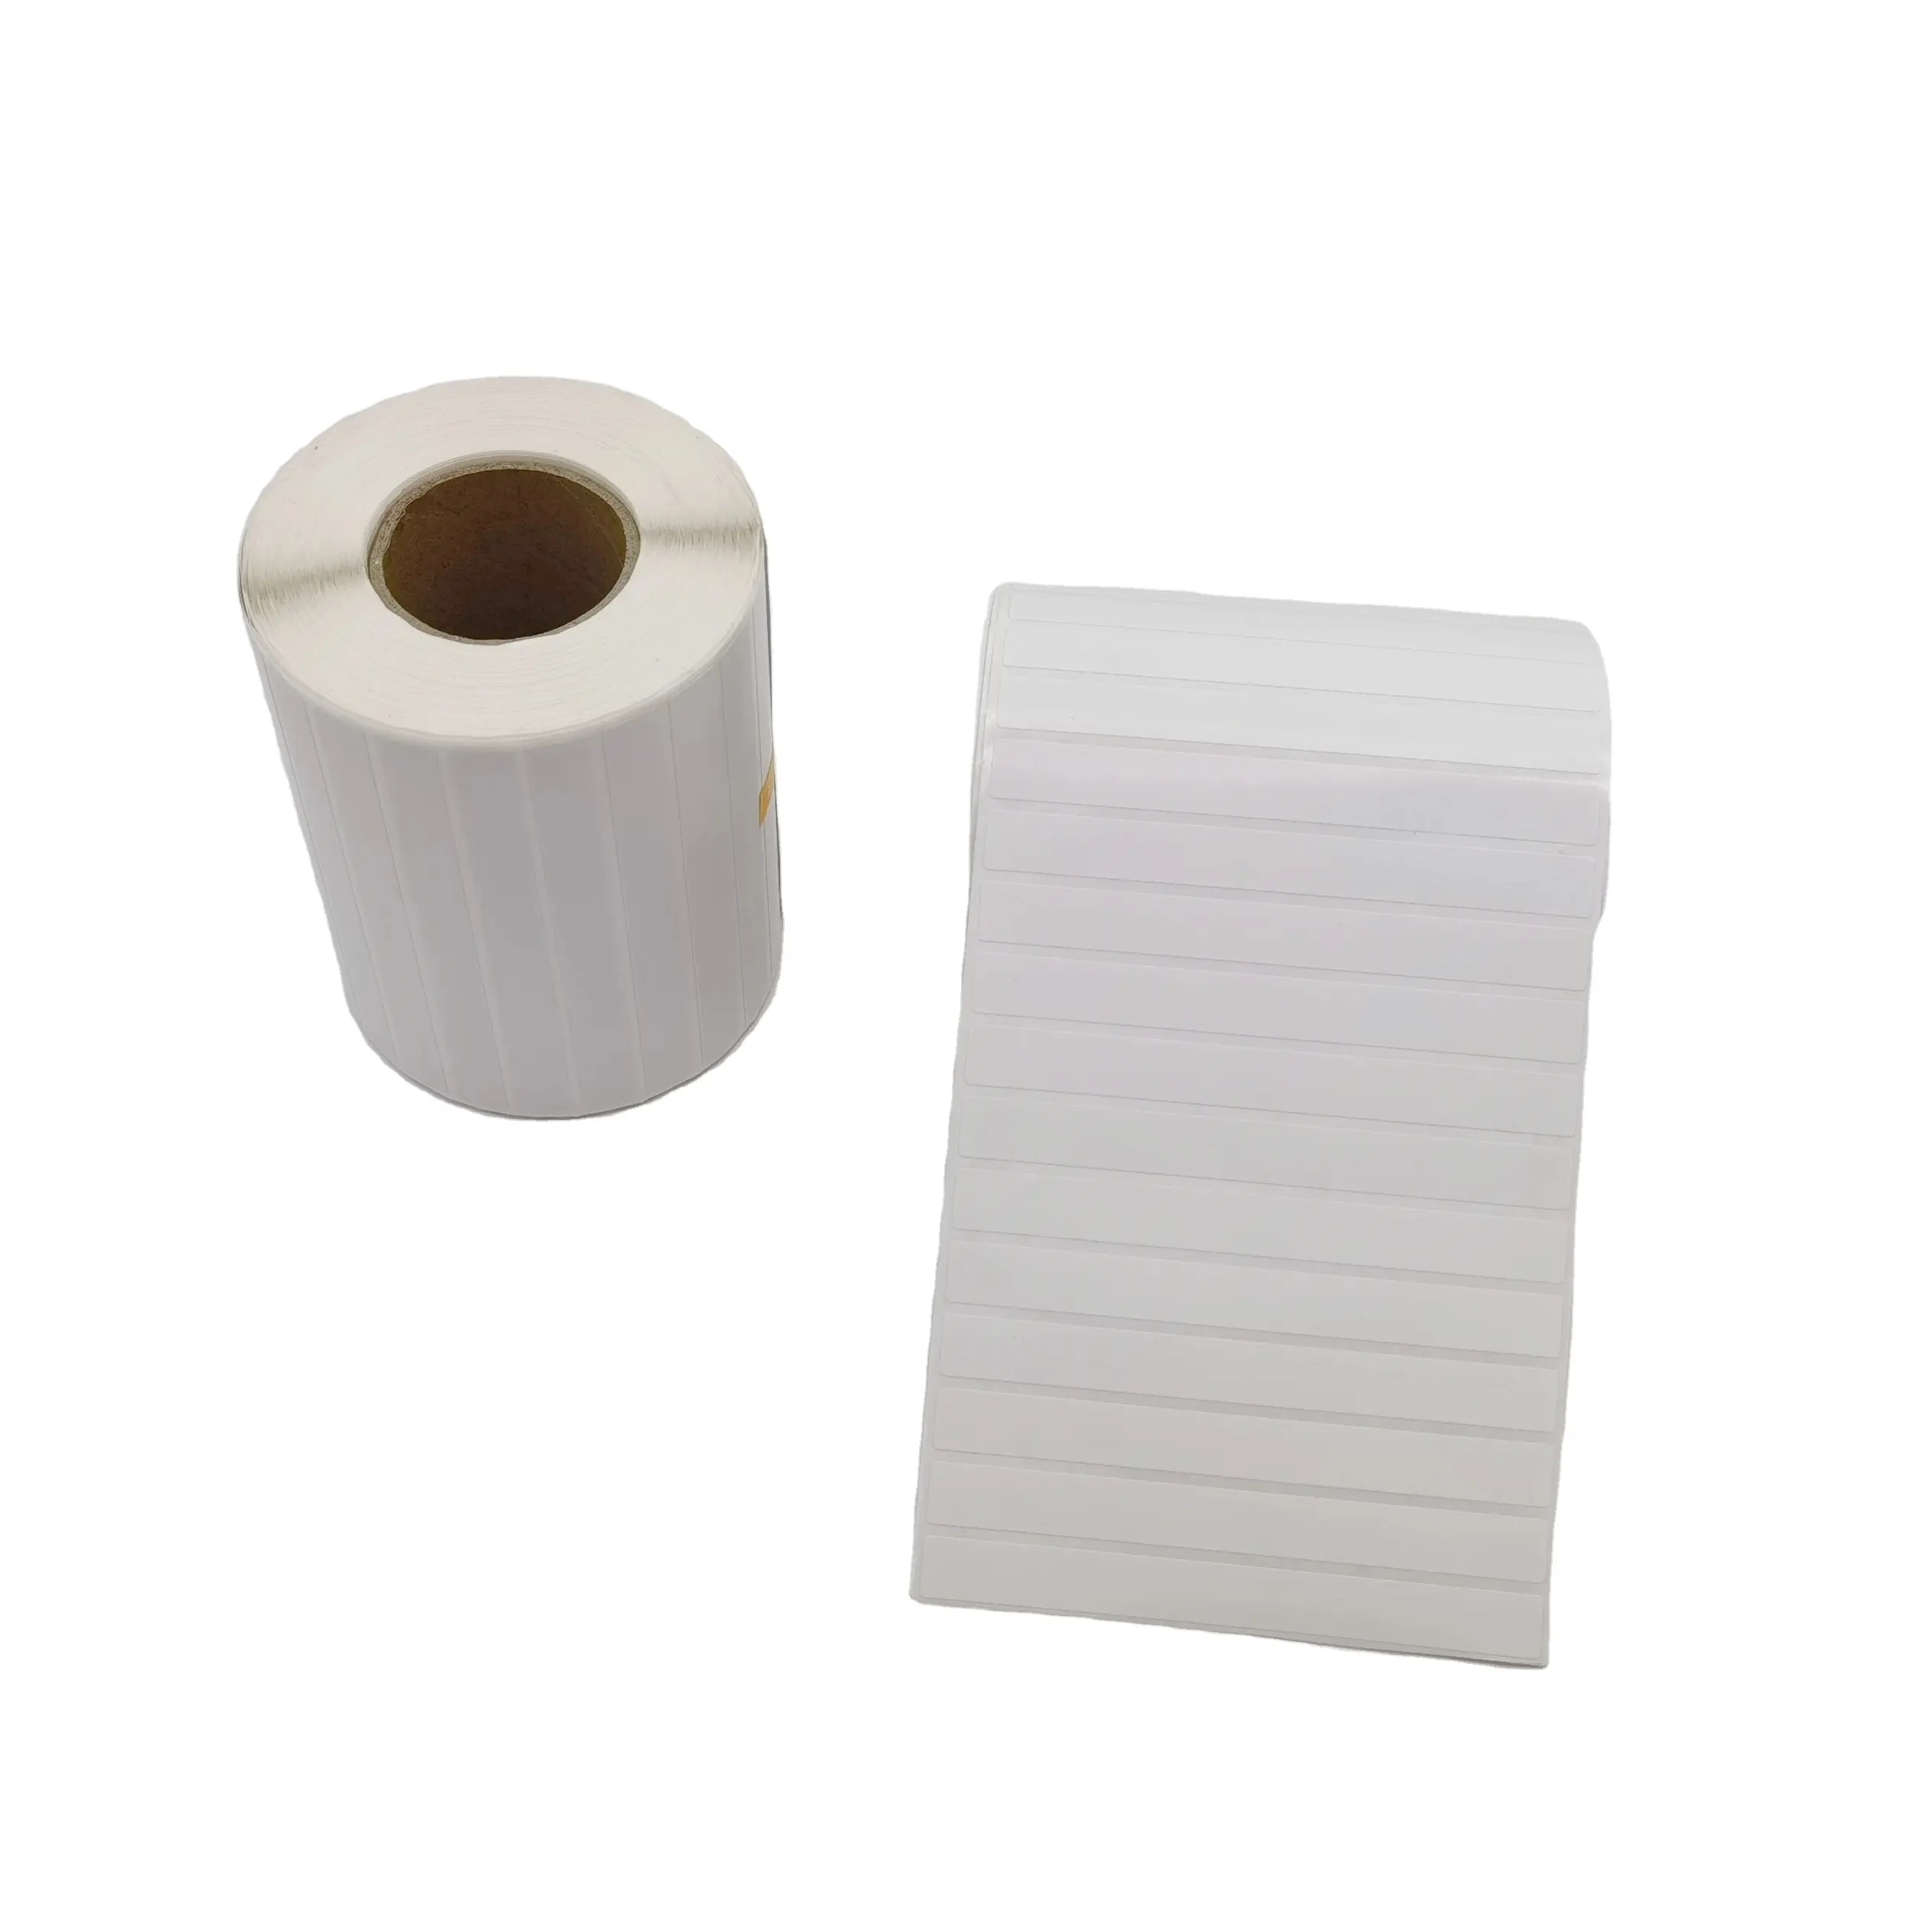 Adesivo adesivo 100mm x 10mm 3 prova amovibile Freezer indirizzo codice a barre adesivo personalizzato in vinile carta impermeabile Topa